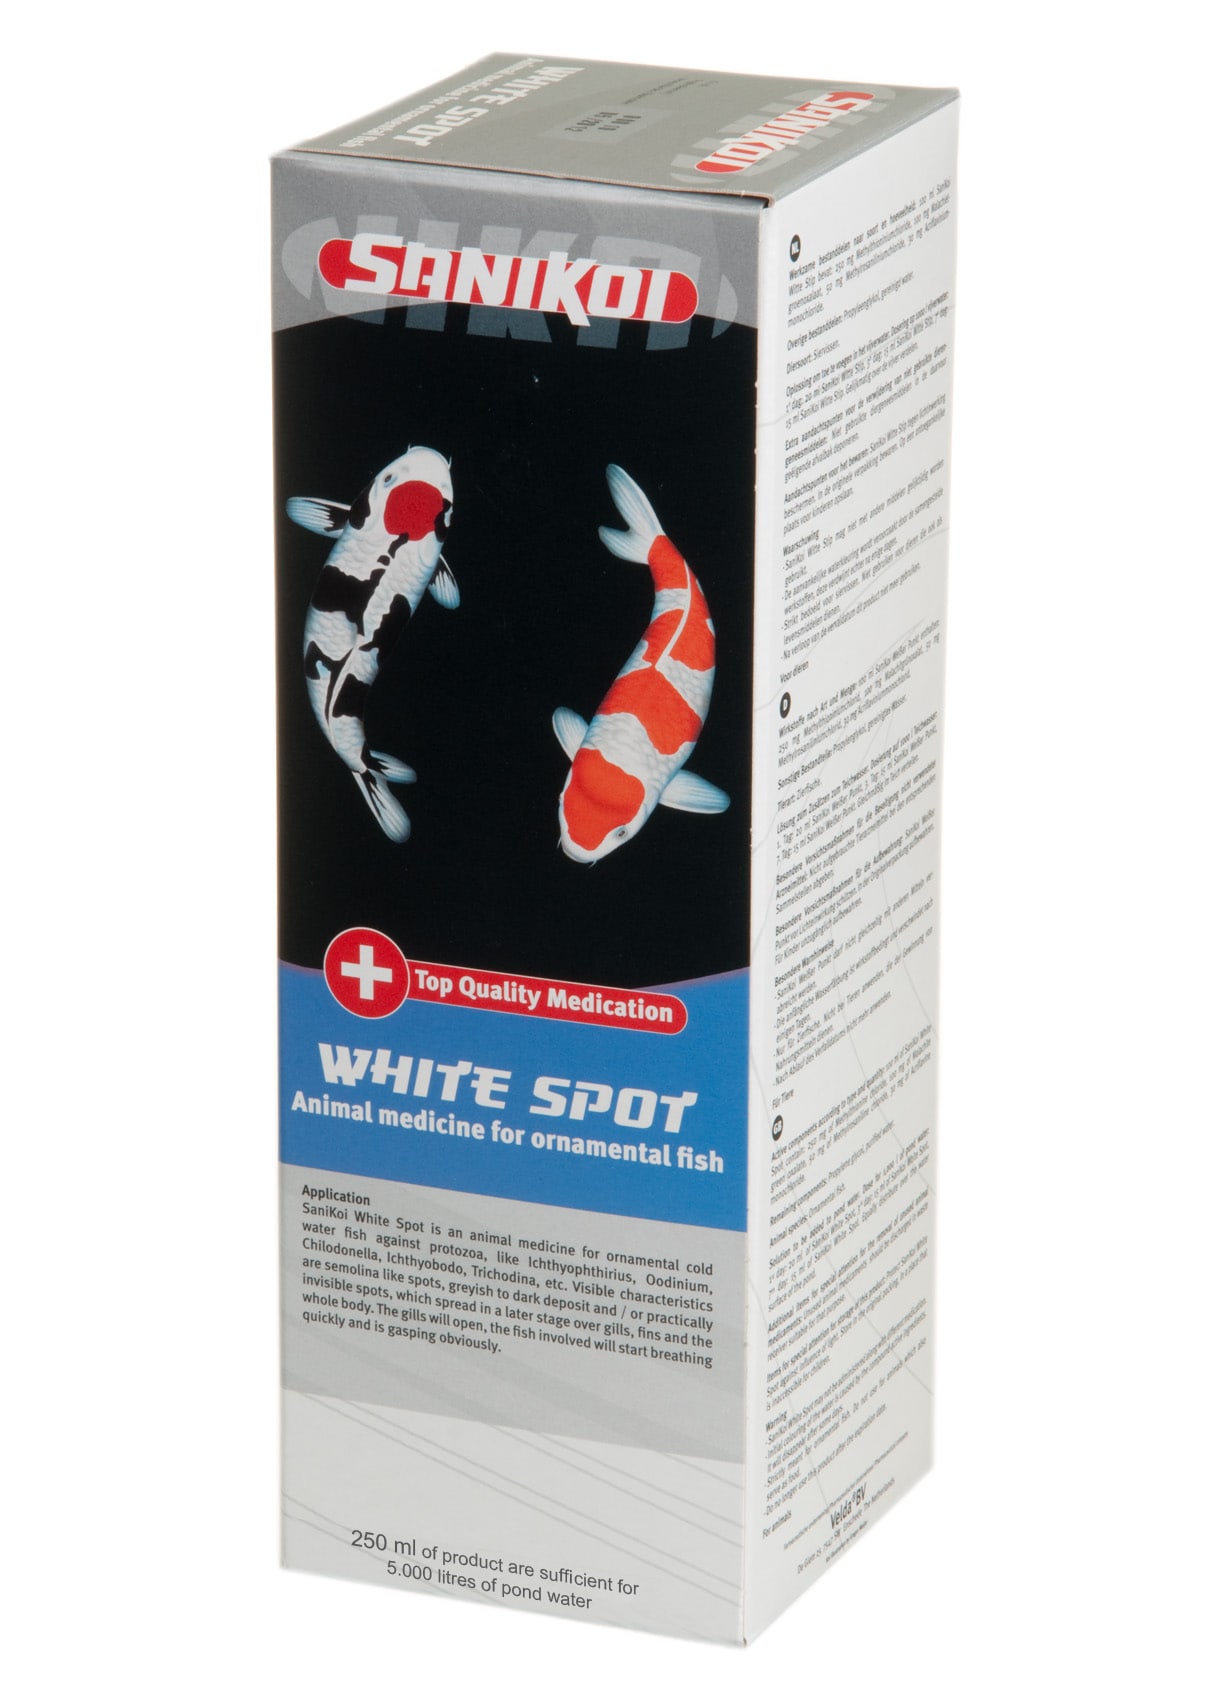 SANIKOI White Spot 250 ml médicament pour poissons de bassin contre les parasites de la peau comme les points blancs (Ichthyo), etc. - Traite jusqu\'à 5000 L